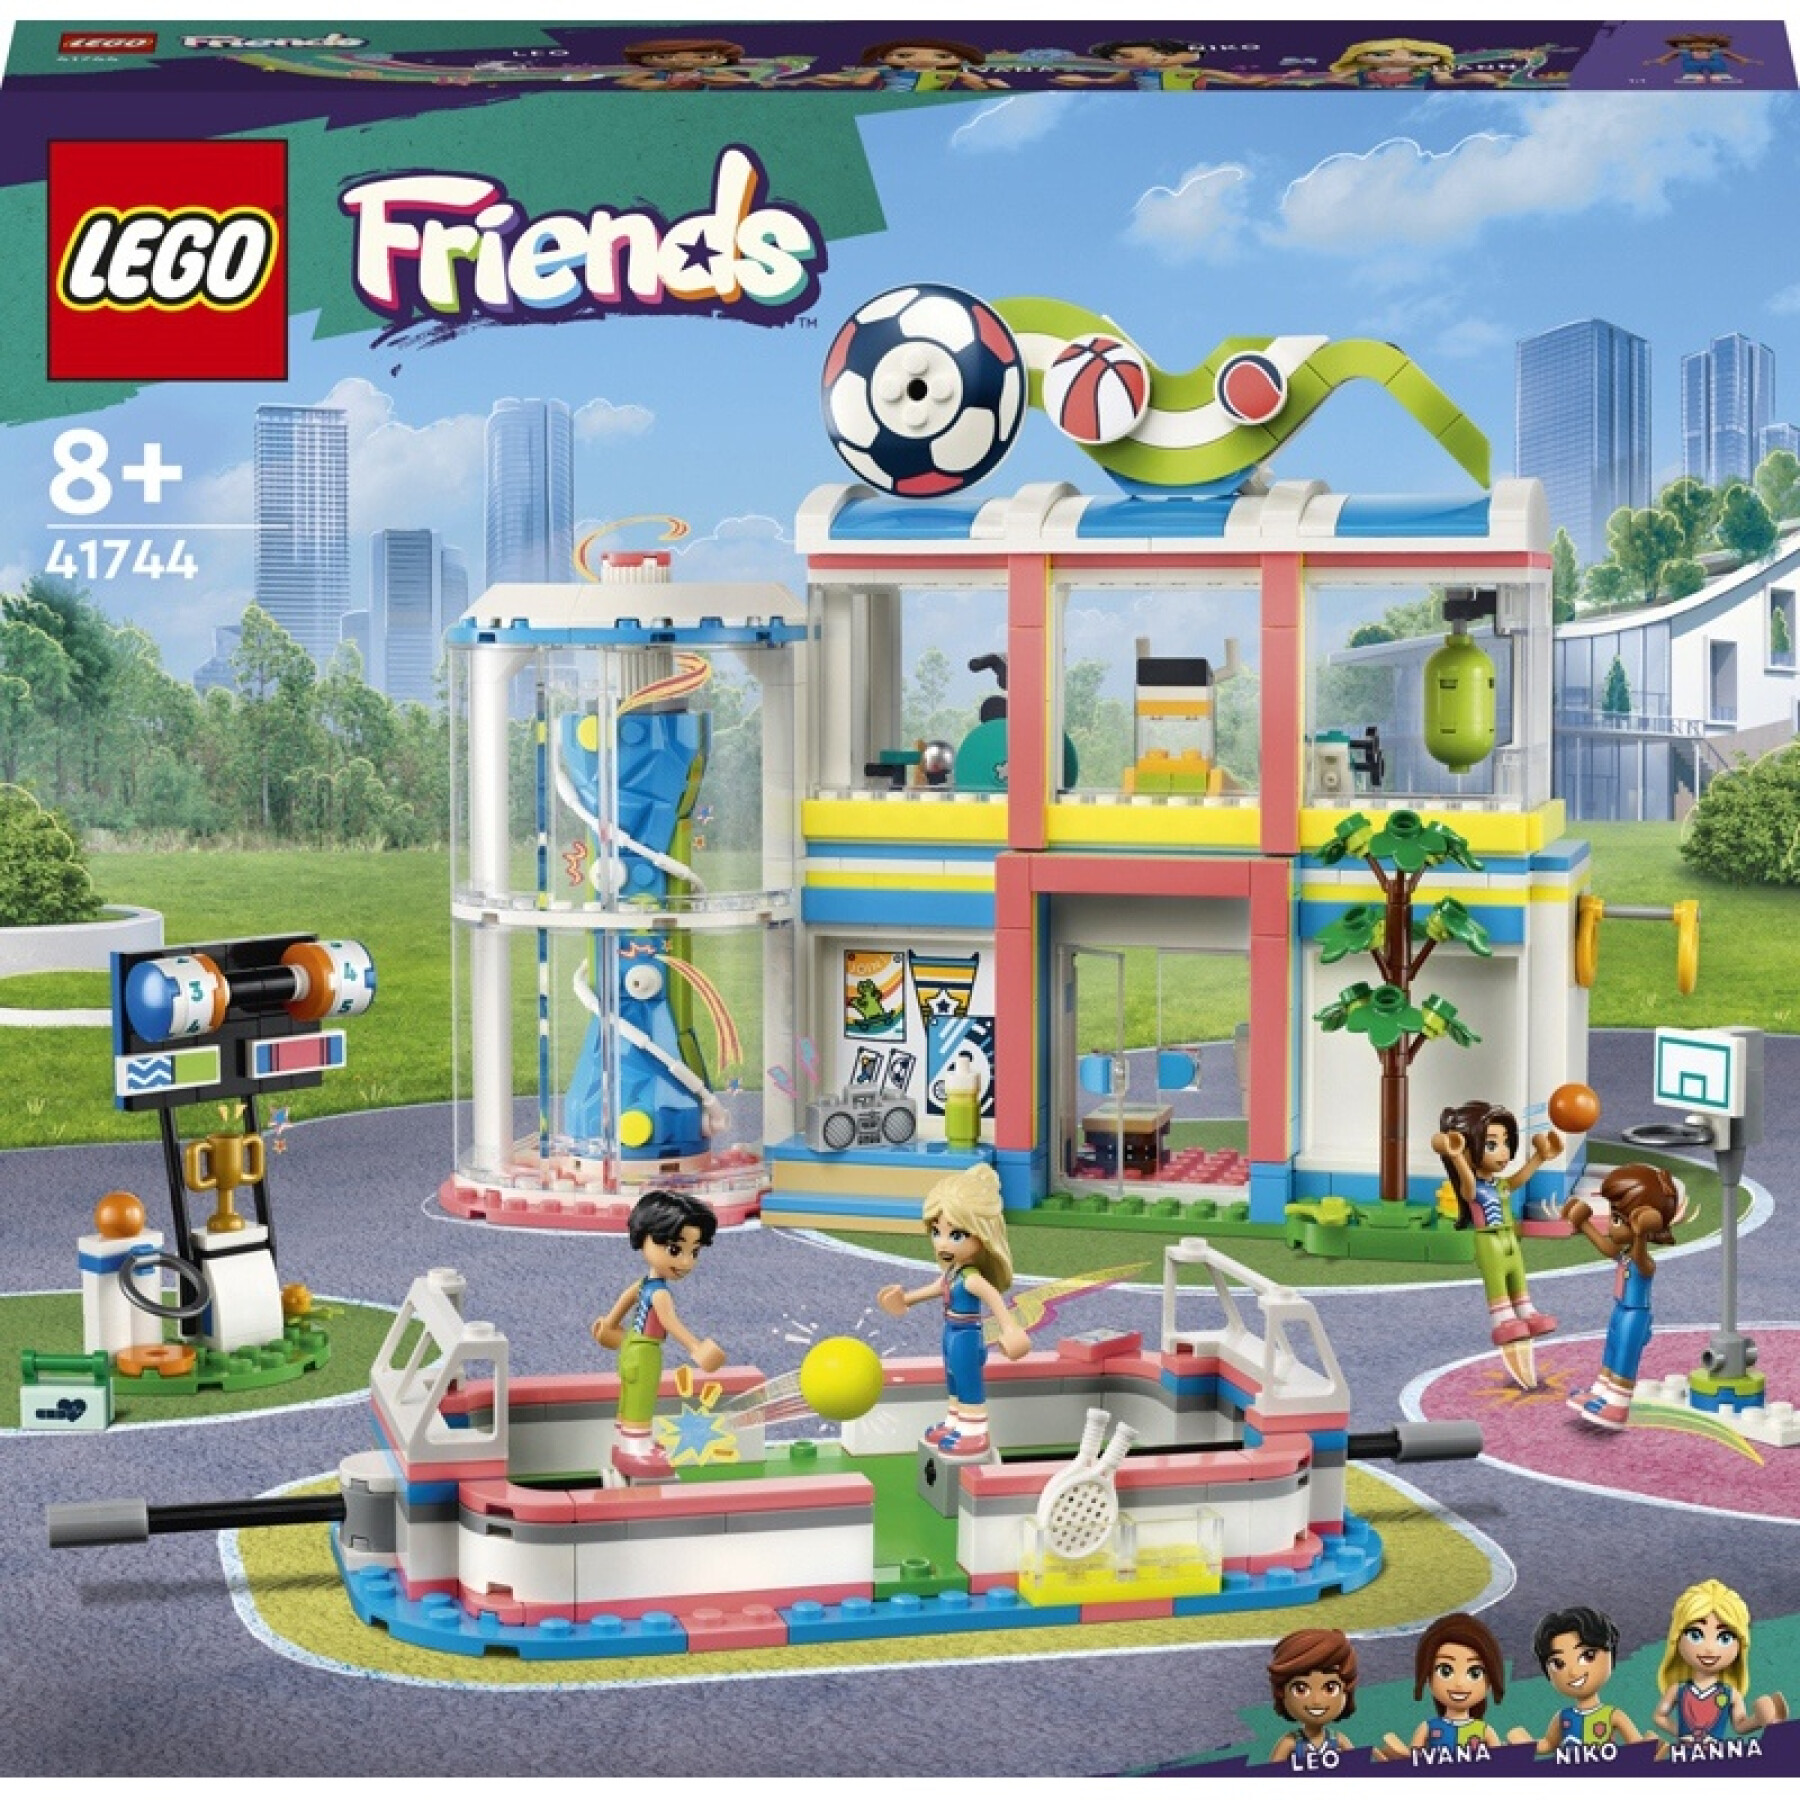 Jogos de construção no centro desportivo Lego Friends